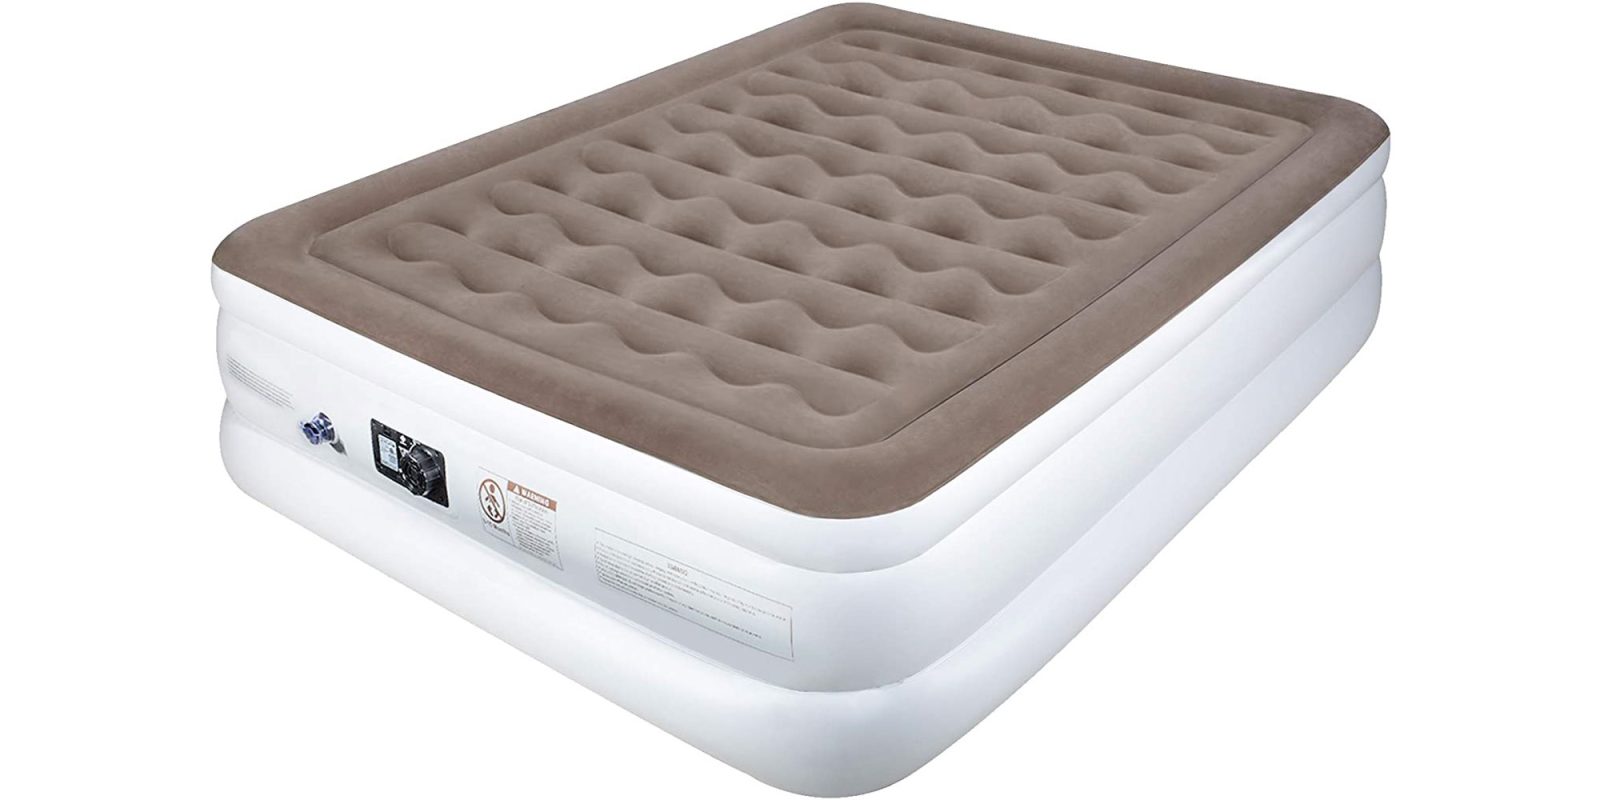 etekcity camping portable air mattress queen